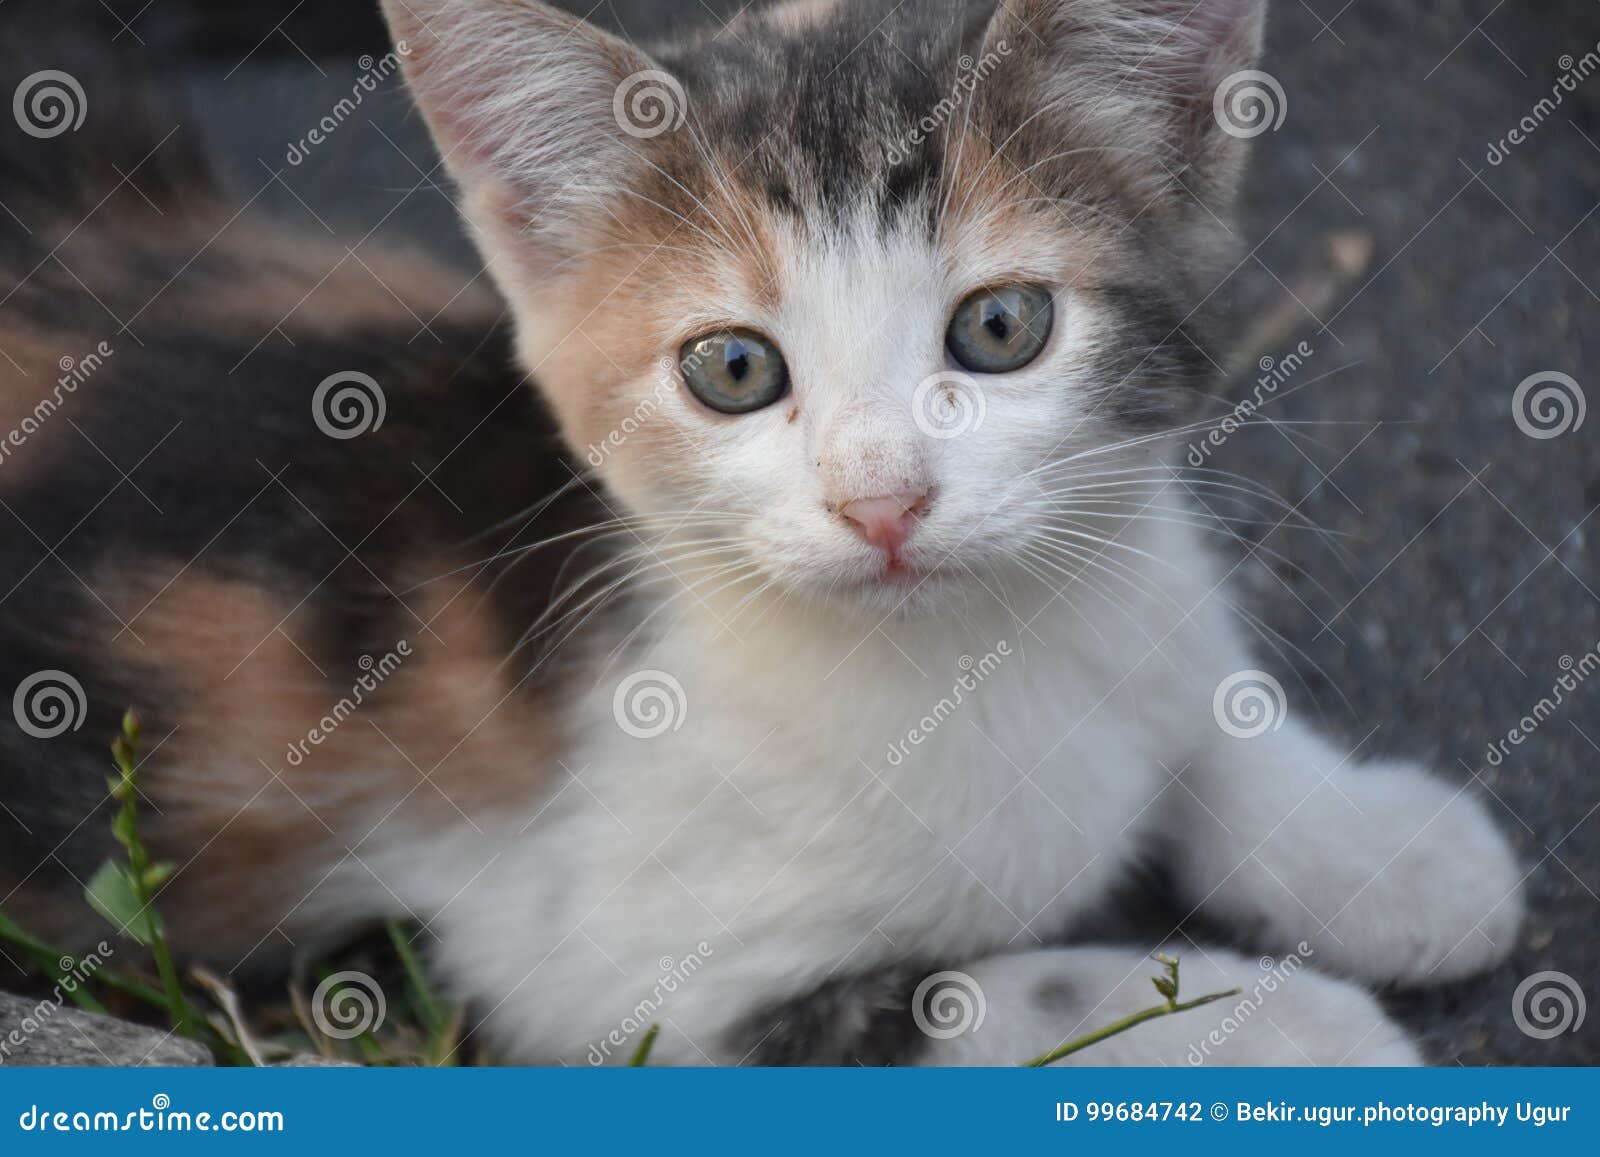 a small lovely kitten